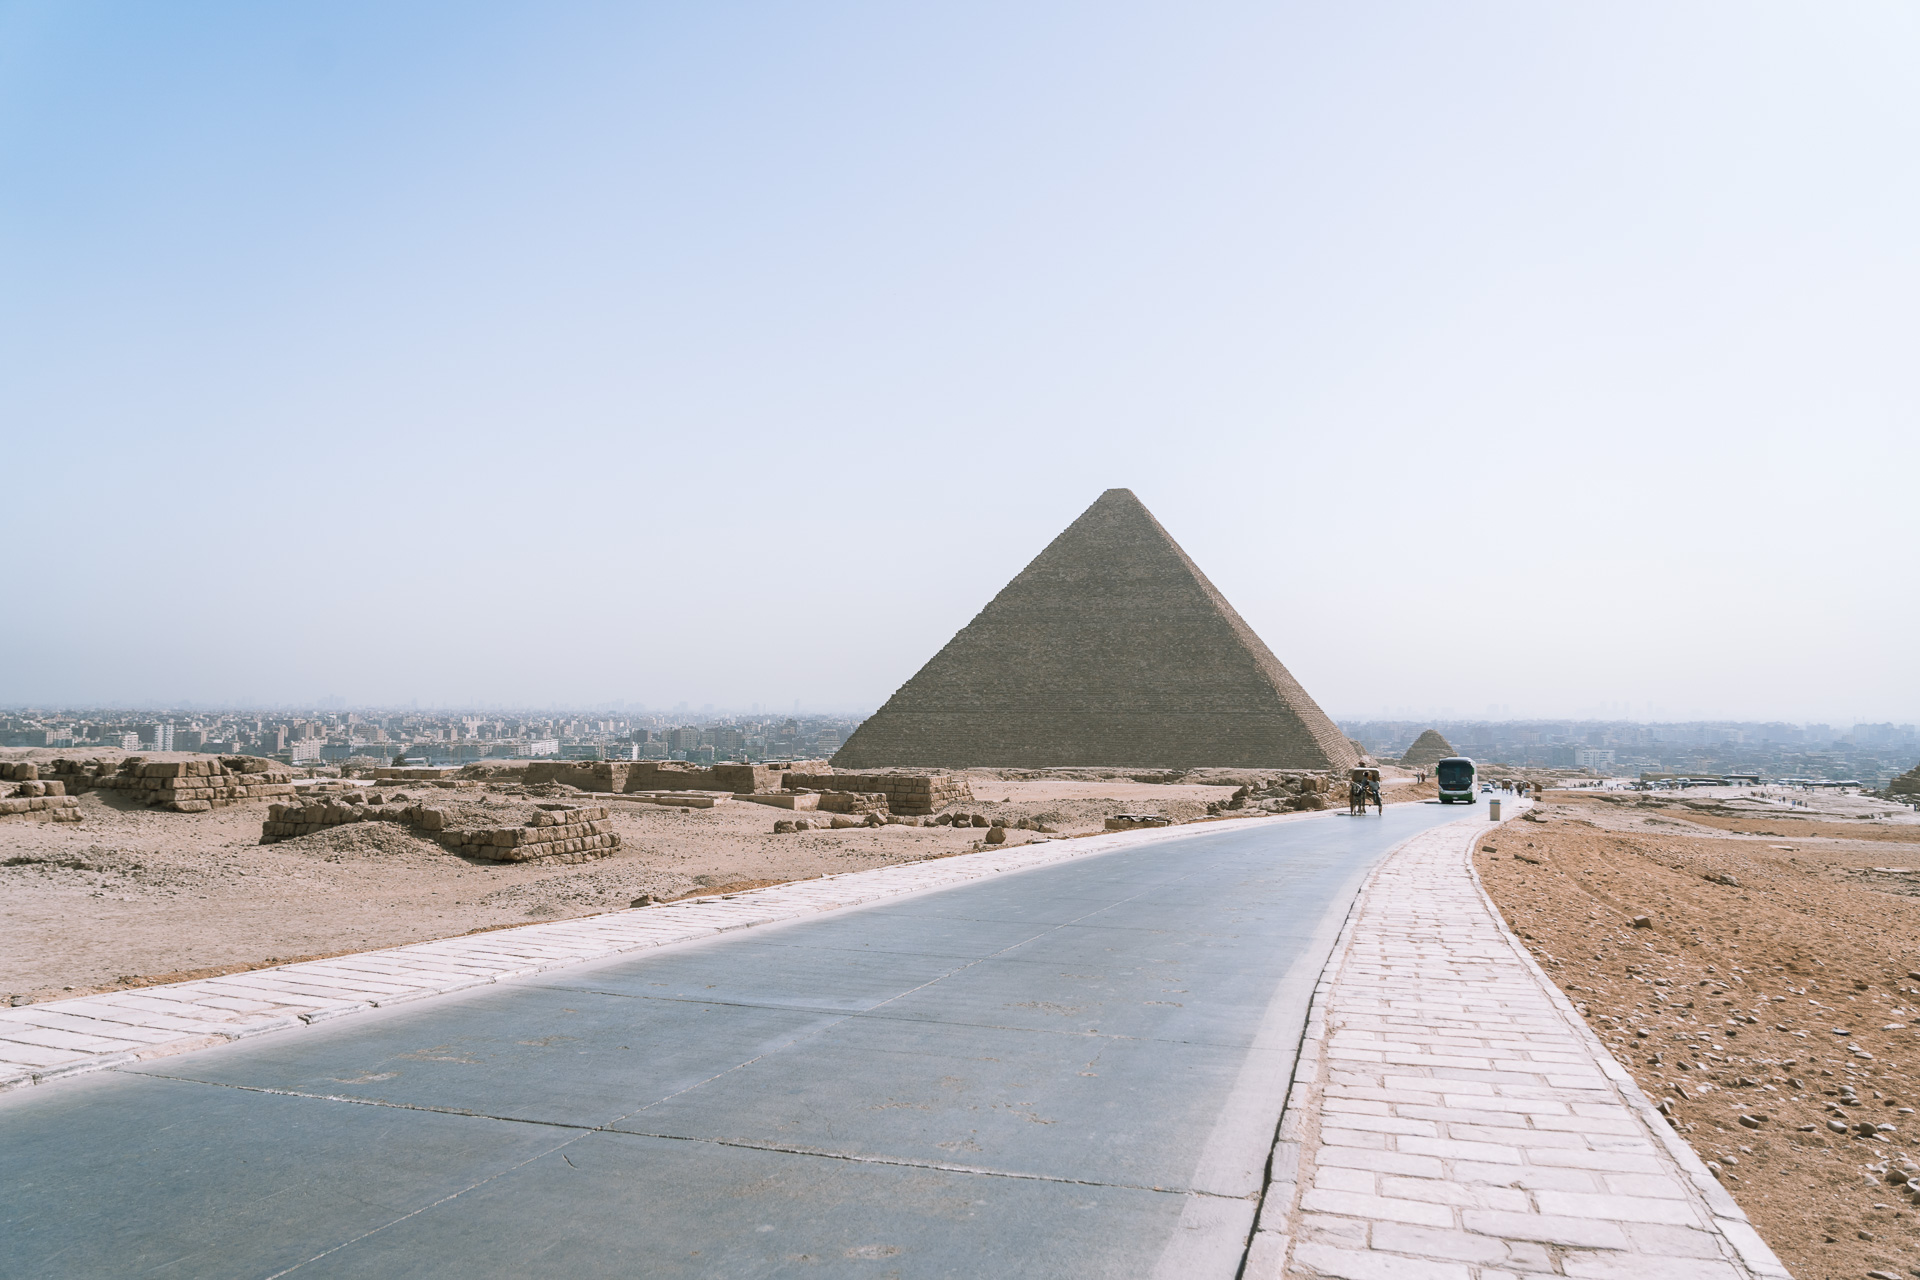 Egypt - Cairo - Pyramids of Giza741- BLOGPOST HQ